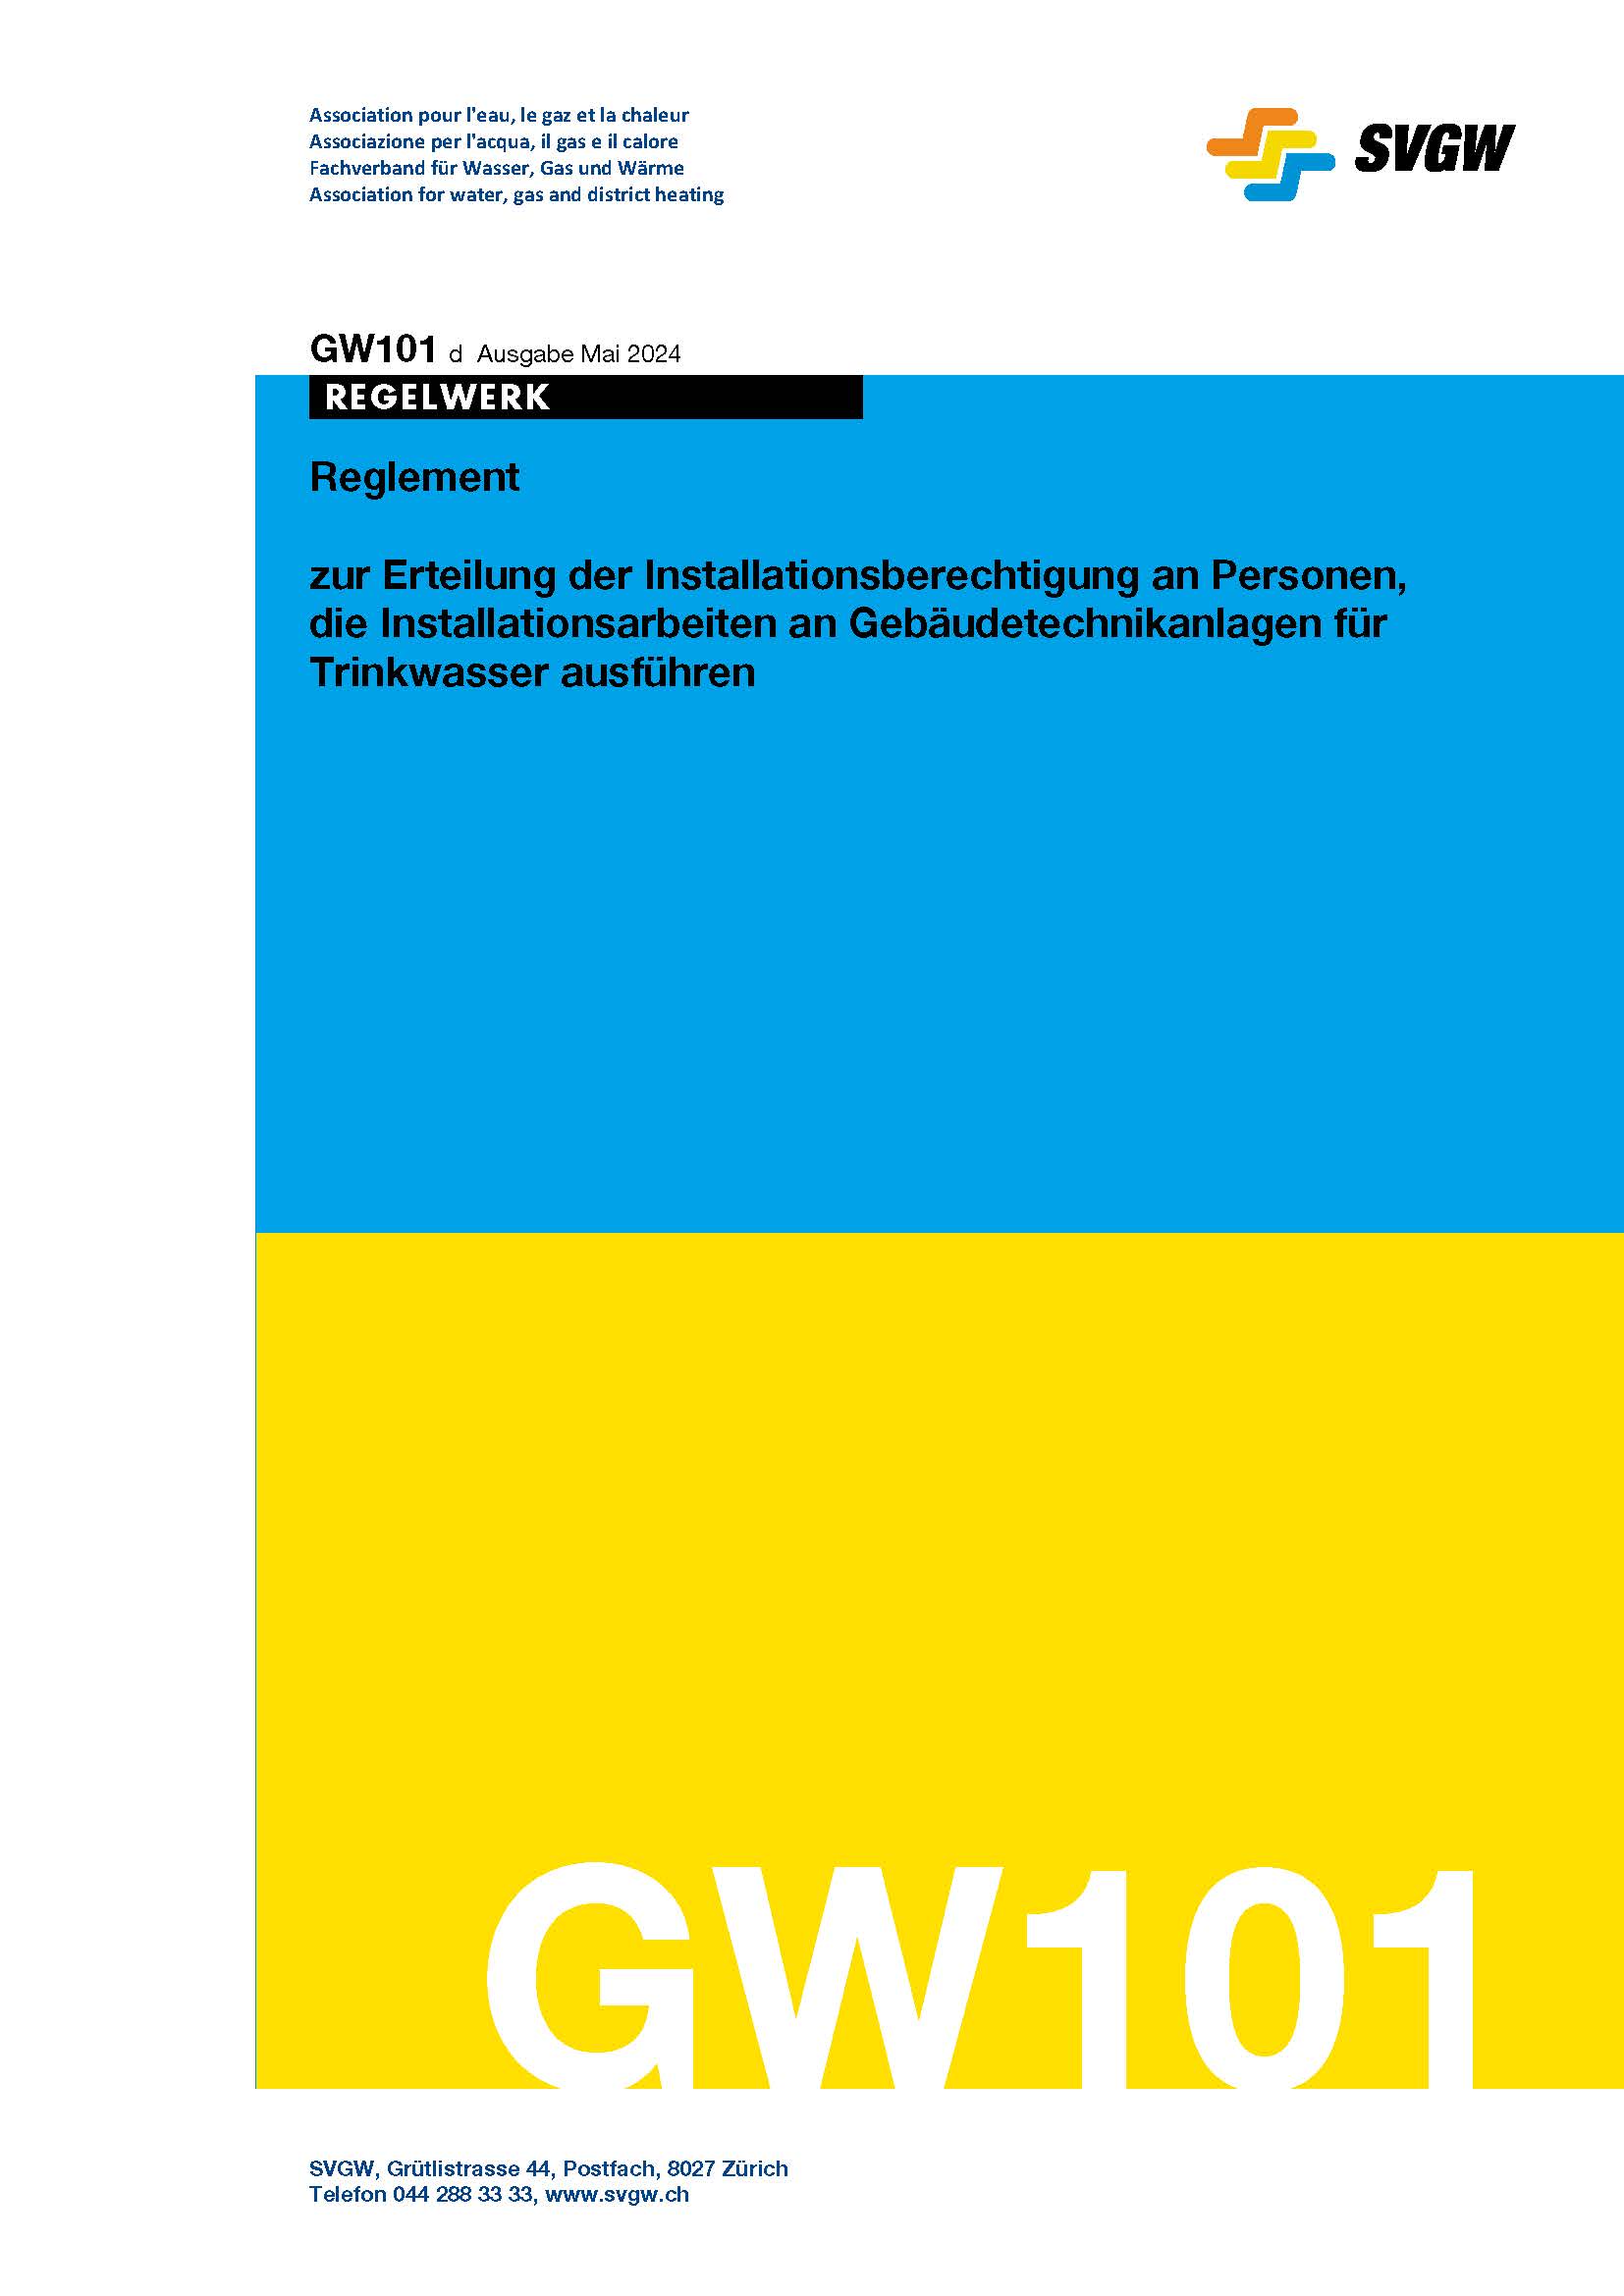 GW101 d Reglement zur Erteilung der Installationsberechtigung an Personen, die Installationsarbeiten an Gebäudetechnikanlagen für Trinkwasser ausführen